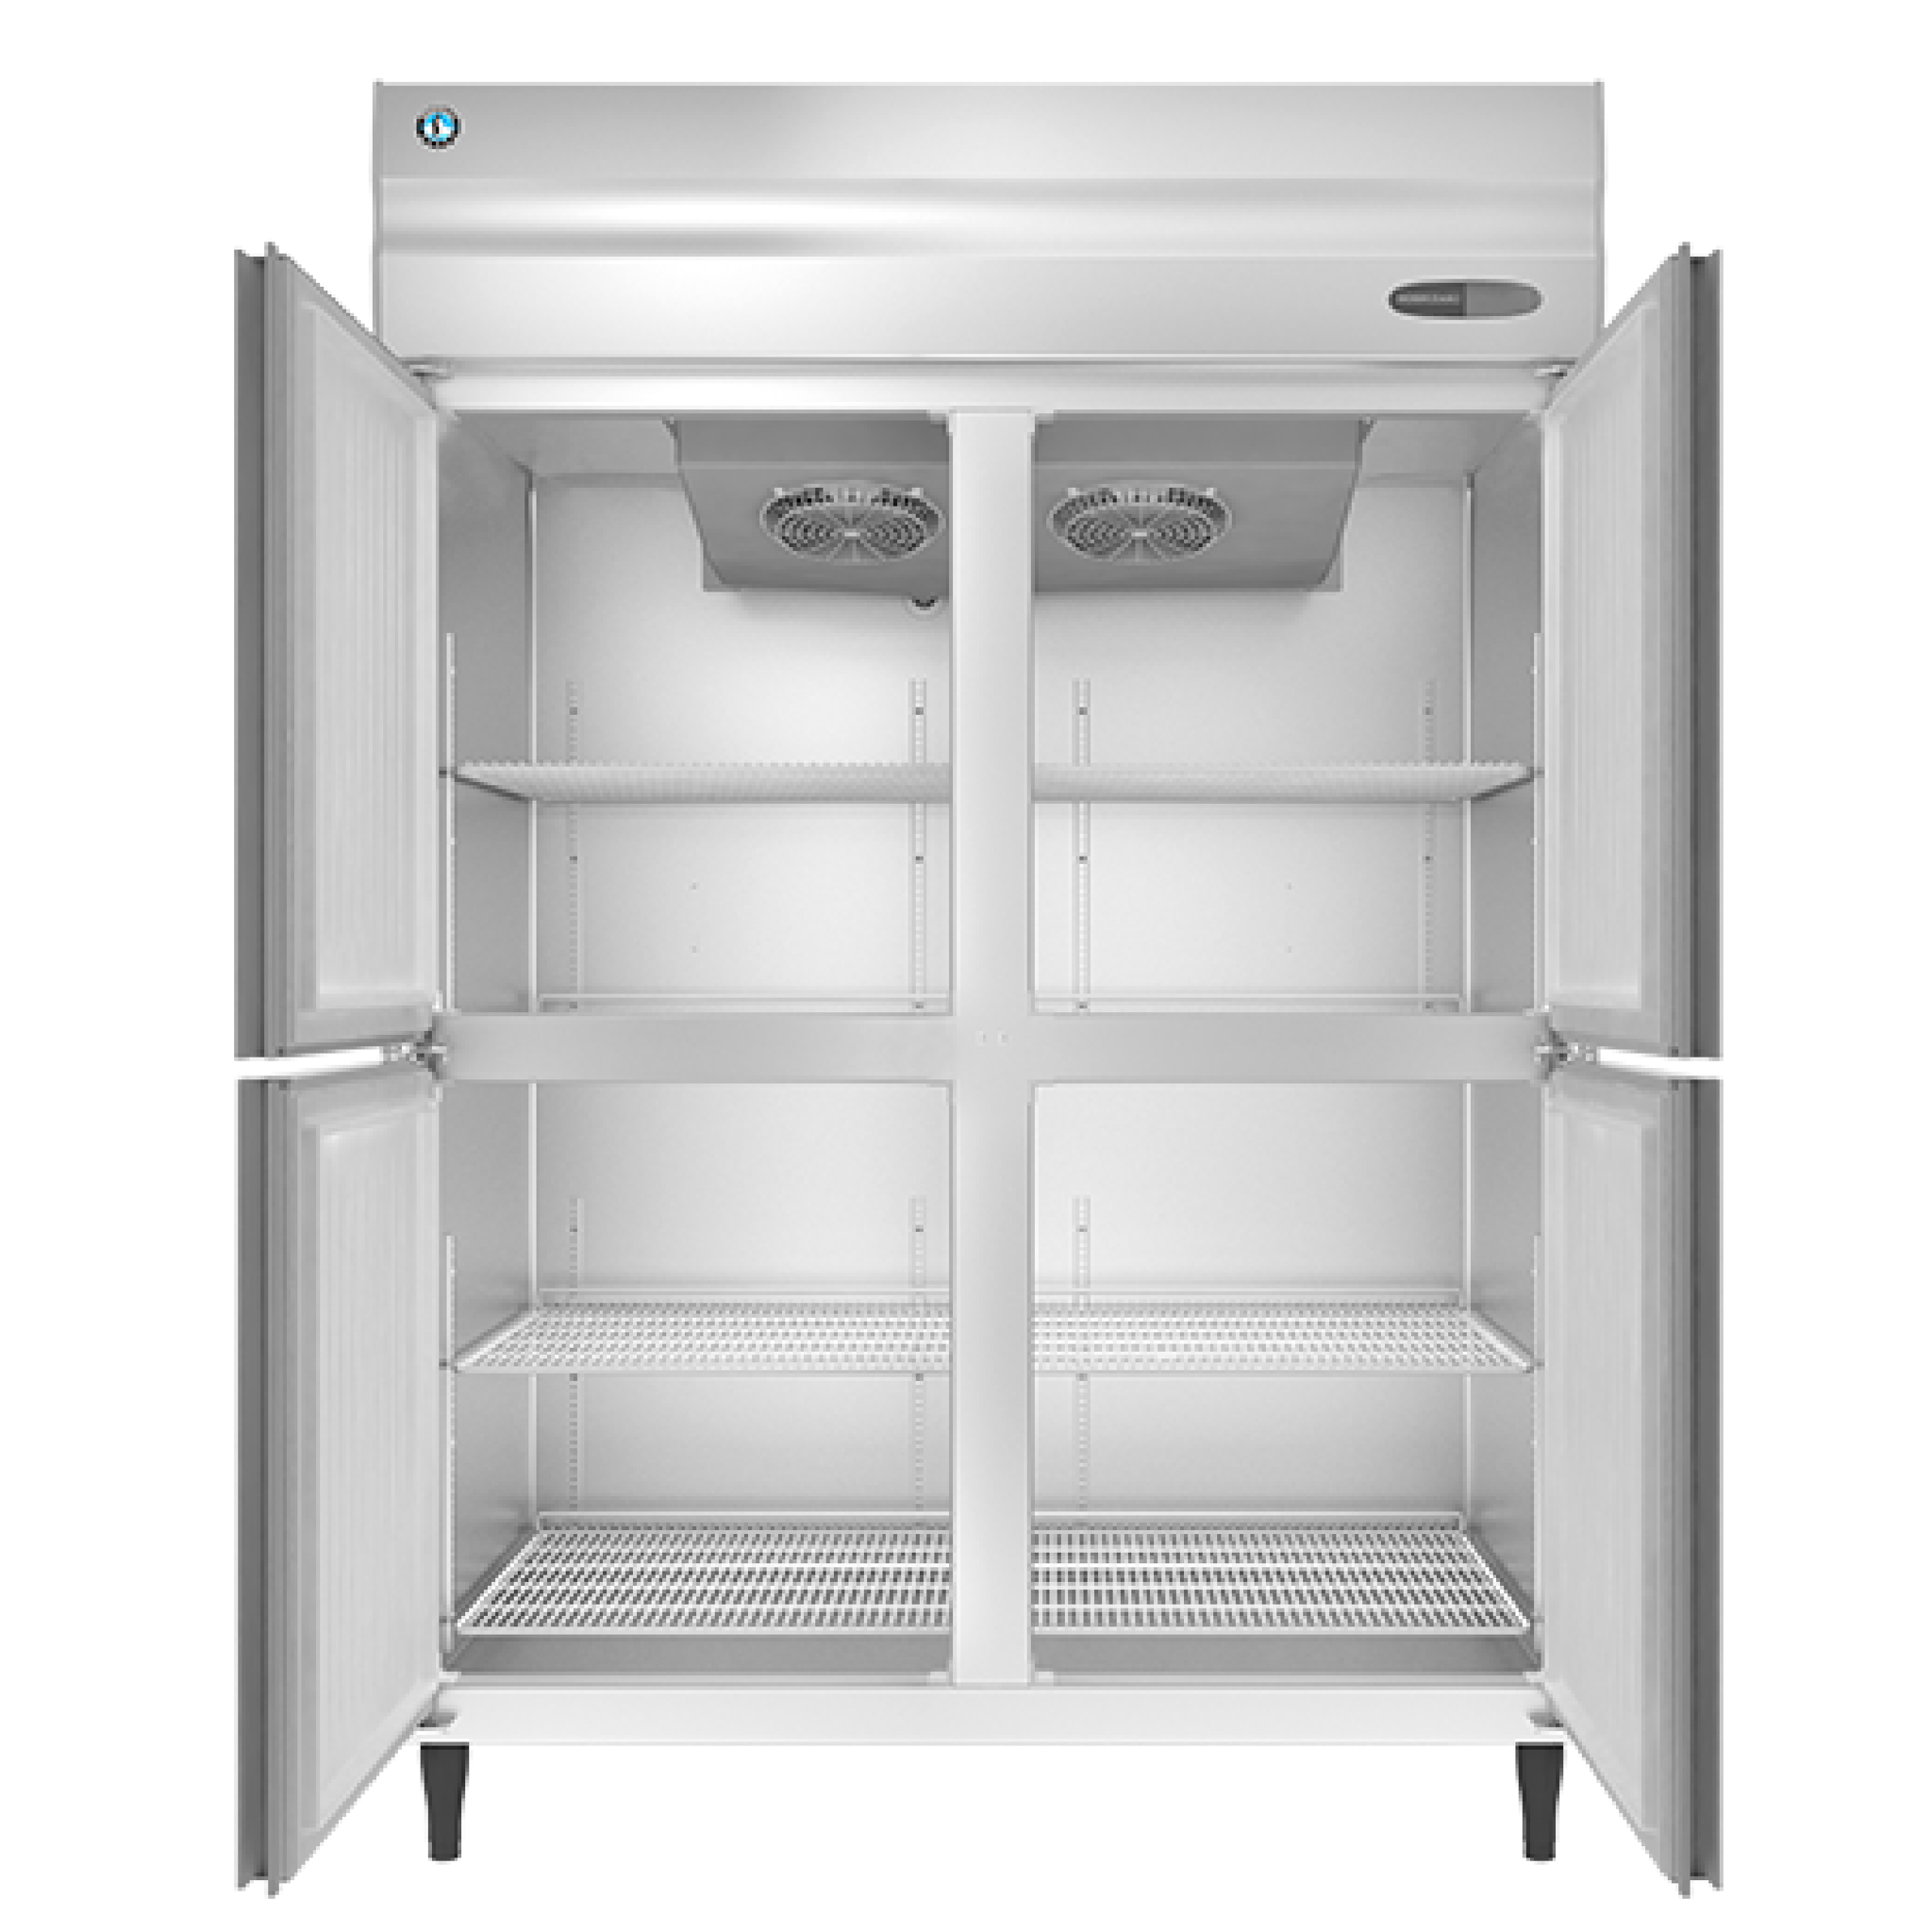  Tủ Lạnh Đứng 4 Cánh Hoshizaki HRW-147LS4 